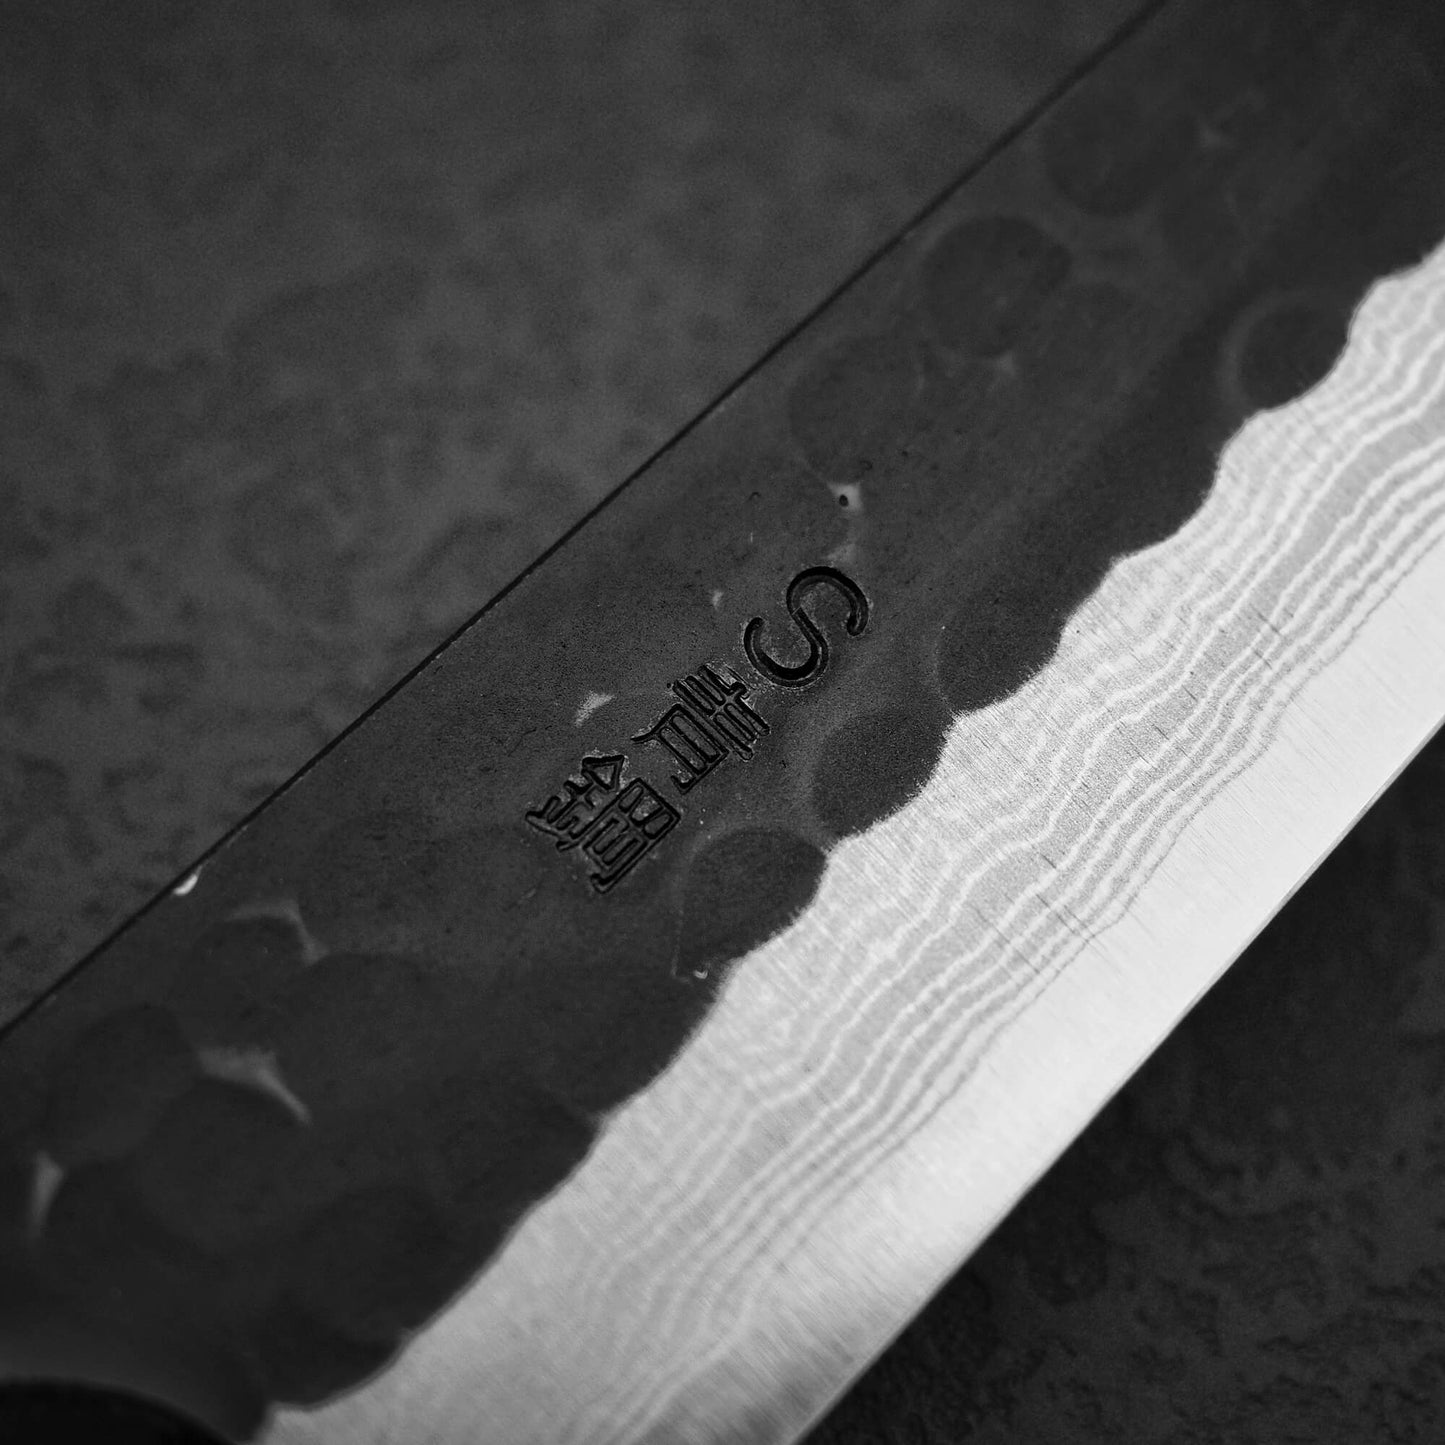 Akifusa tsuchime kurouchi damascus AS petty knife 160mm